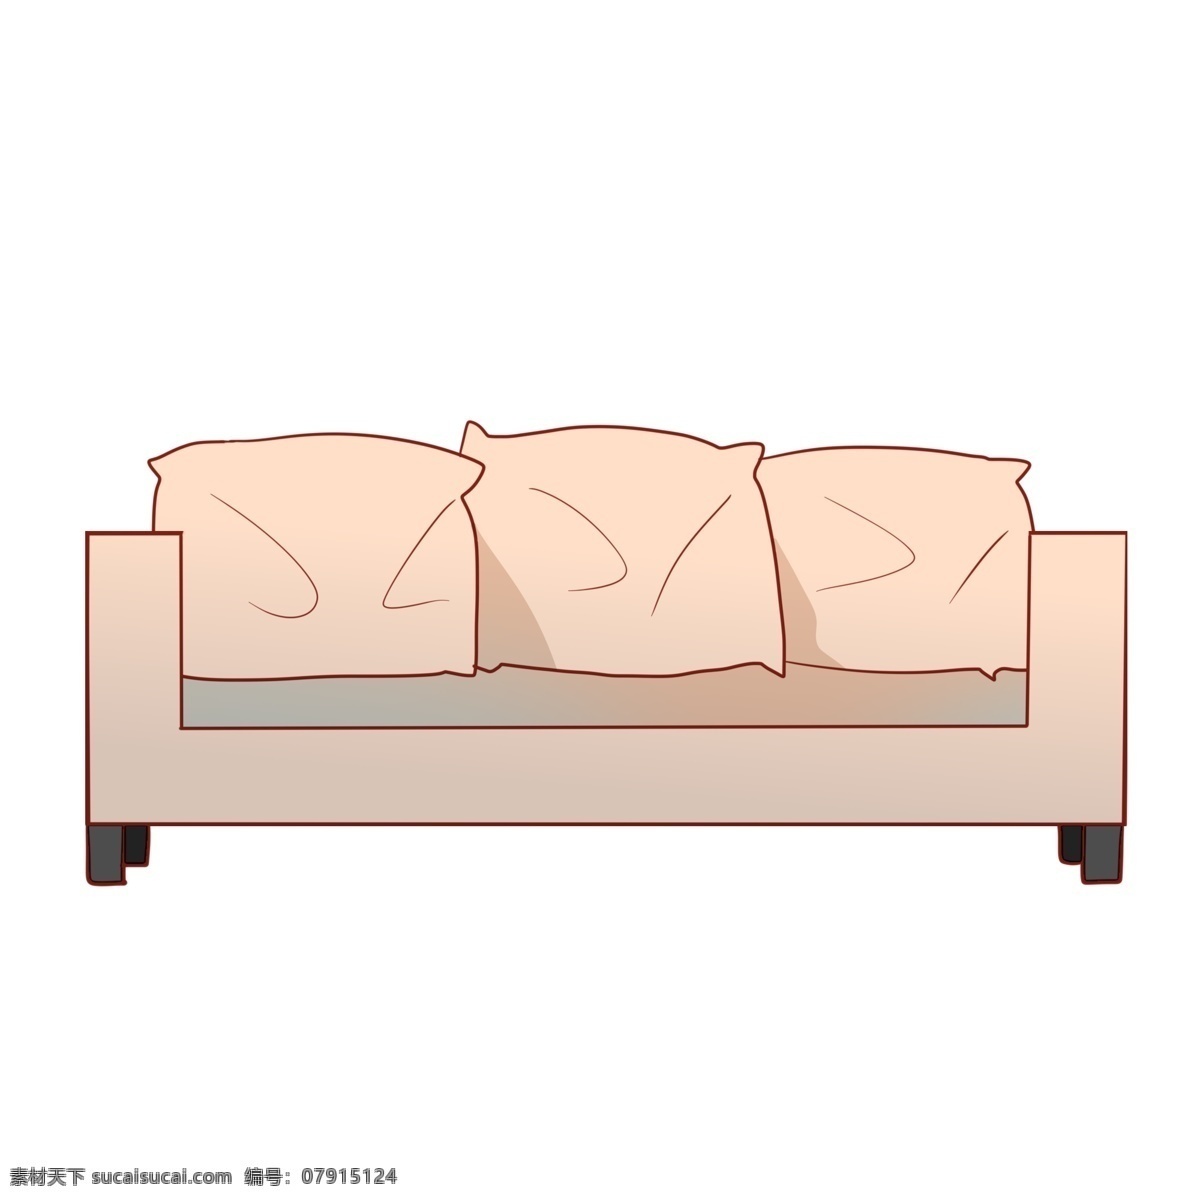 双人 沙发 家具 插画 白色双人沙发 皮沙发 双人沙发 沙发家具 白色沙发 白色家具 抱枕